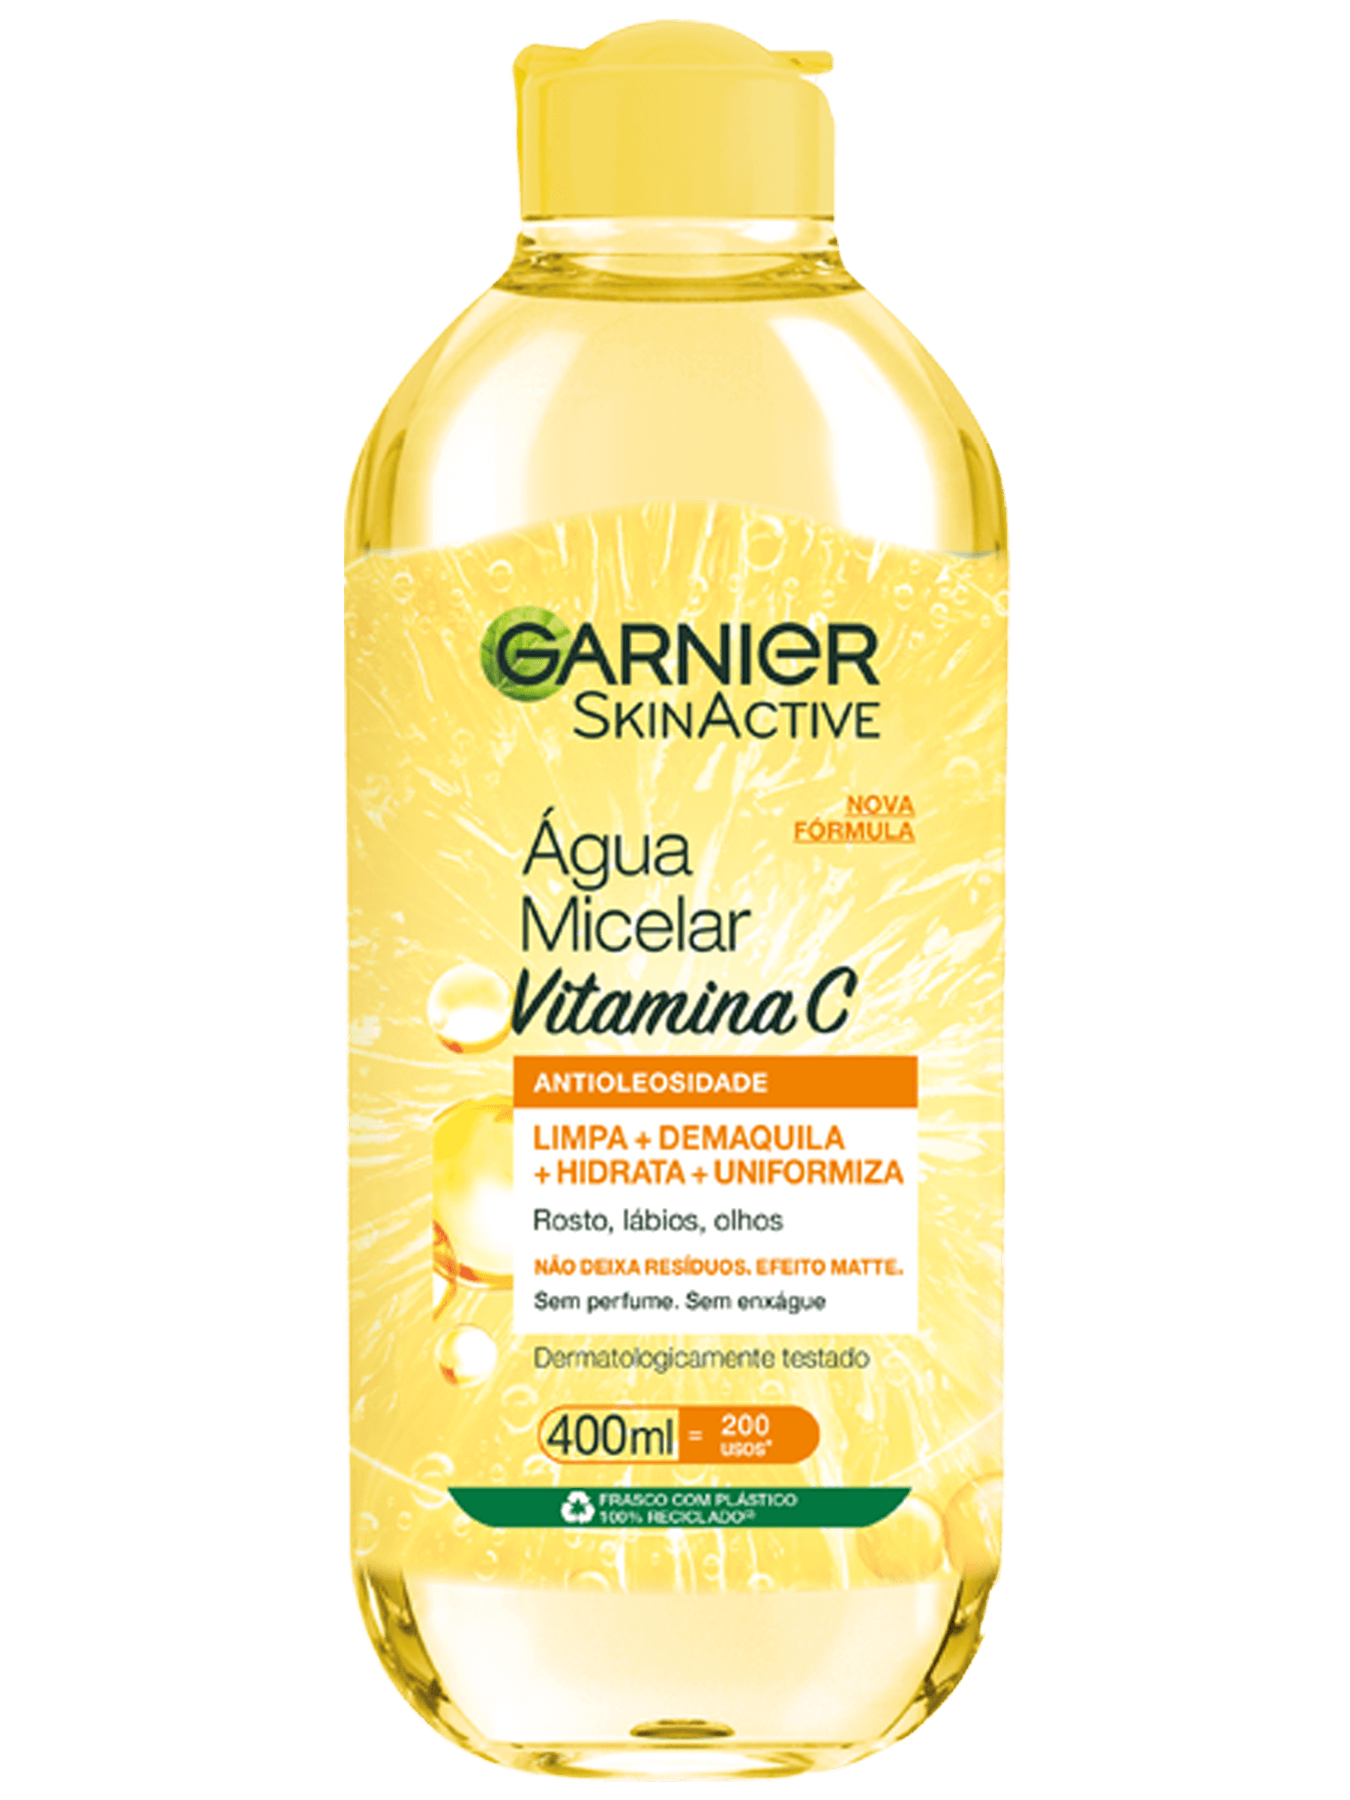 Imagem Água Micelar Antioleosidade com Vitamina C | Packshot | Garnier